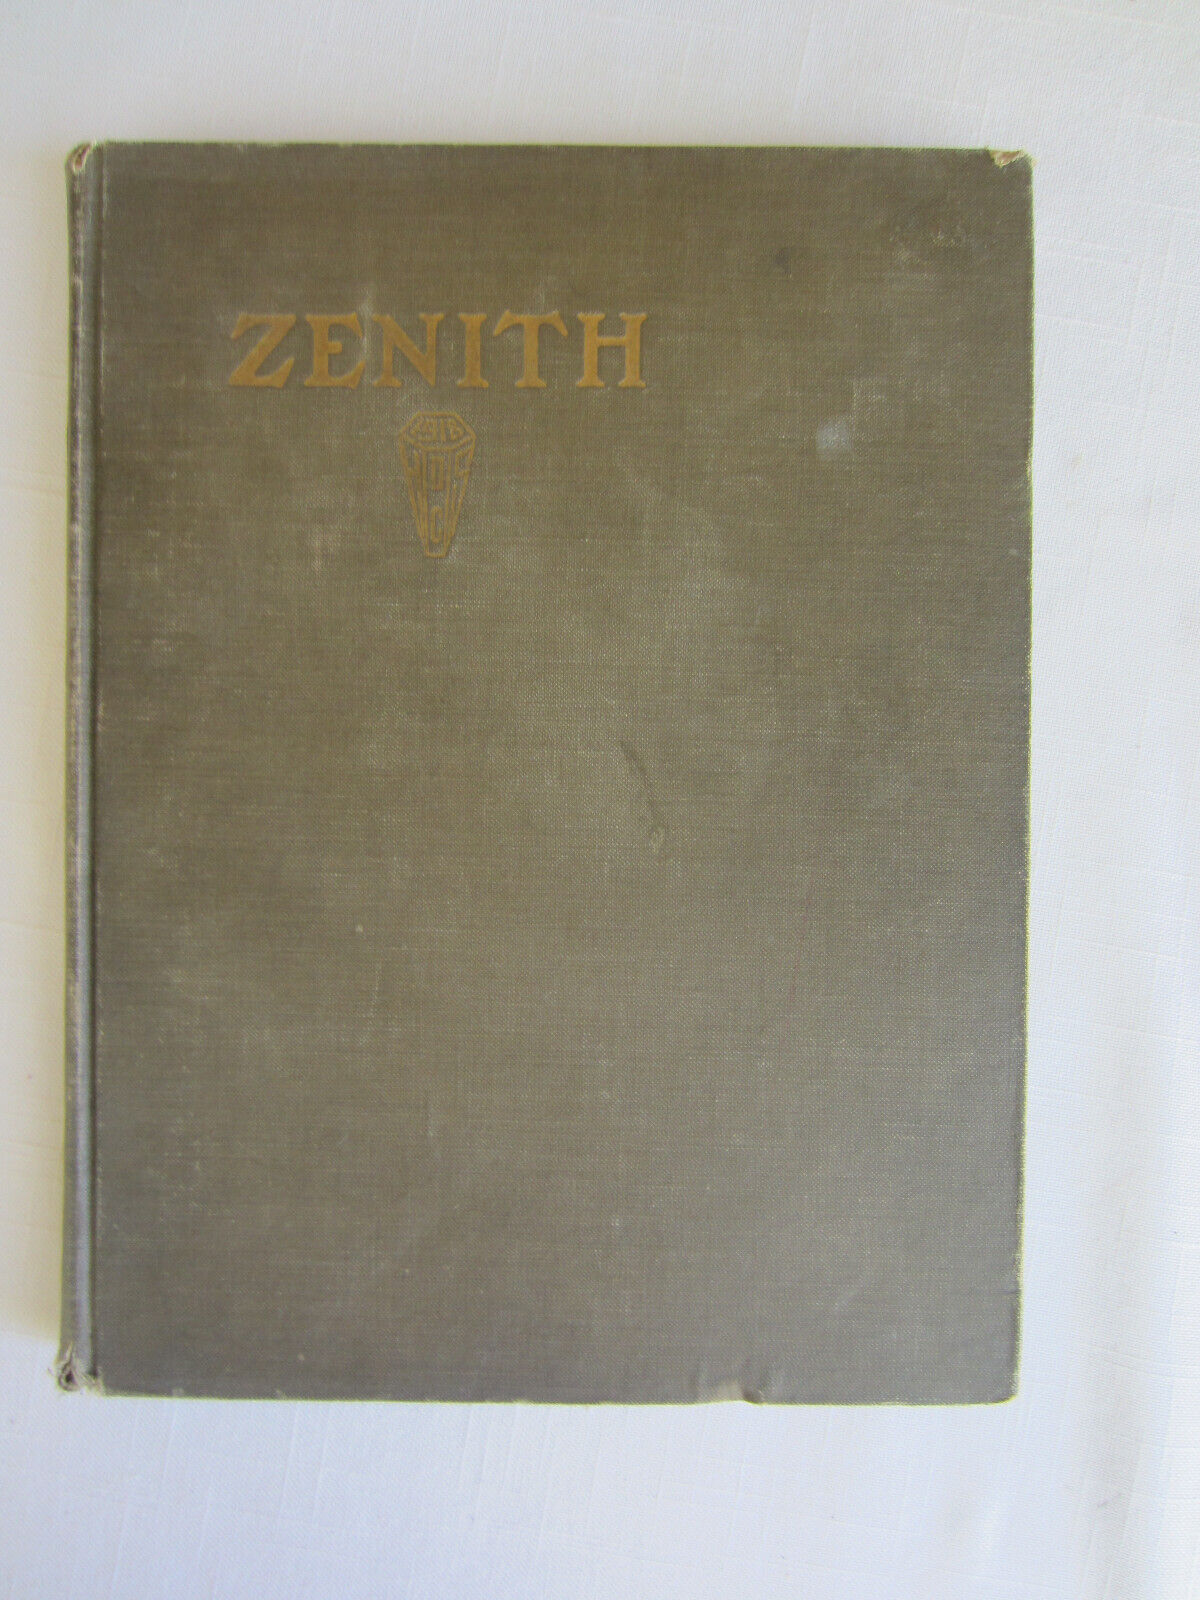 Vintage High School Yearbook 1918 Duluth Central High School Duluth MN. (Zenith)